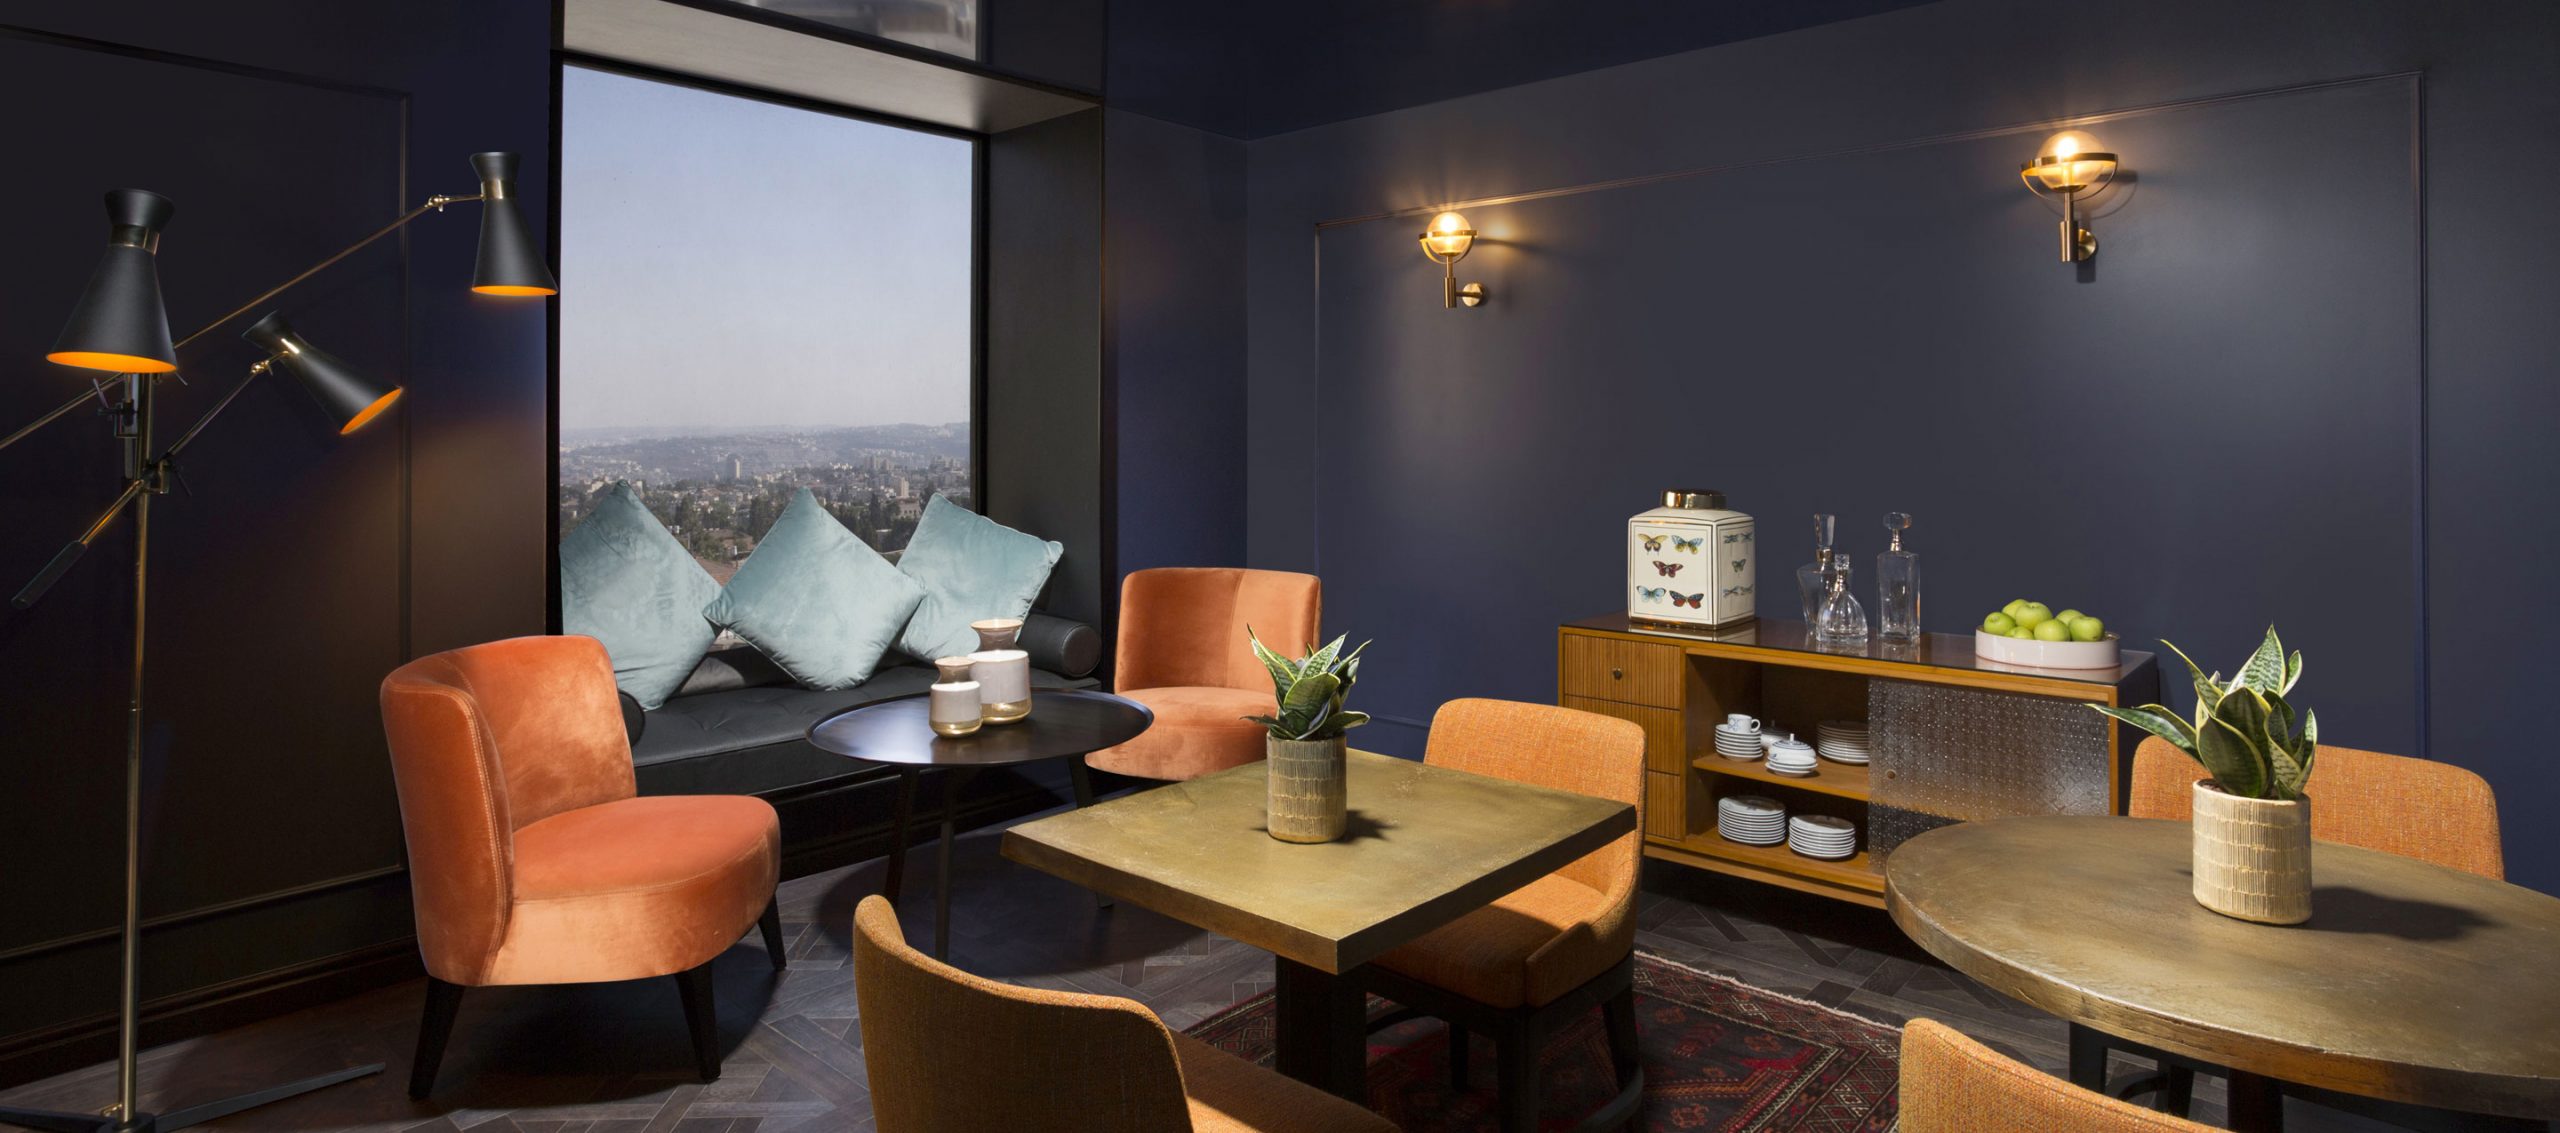 מלונות בתל אביב בתי מלון למשפחות ולזוגות צעירים מקצועיים עם נכונות לתת שירות